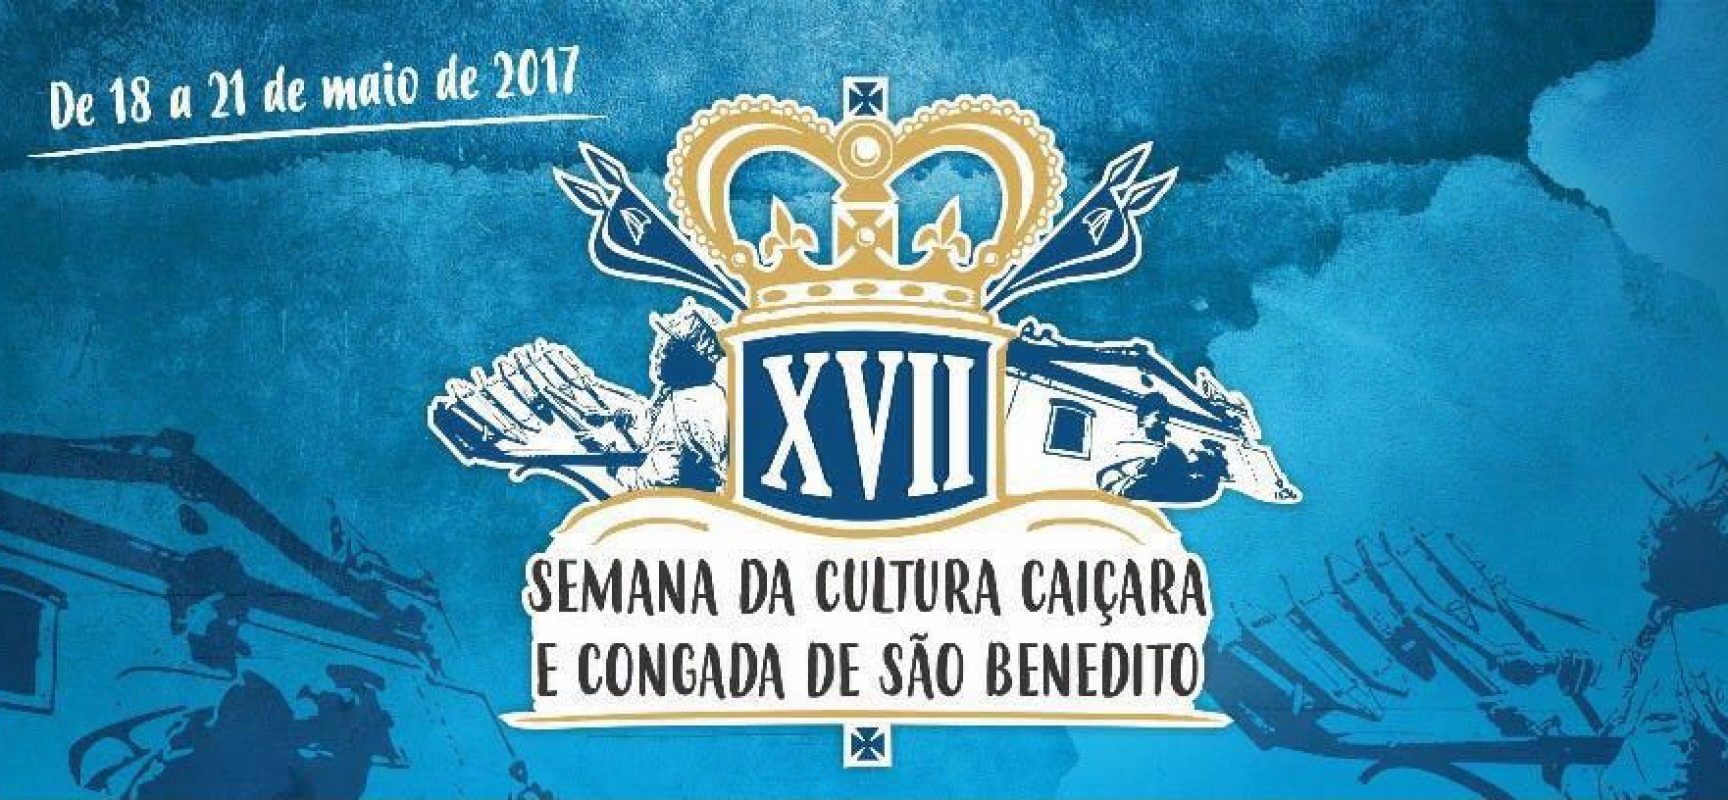 Programação intensa para a XVII Semana da Congada de São Benedito e Cultura Caiçara